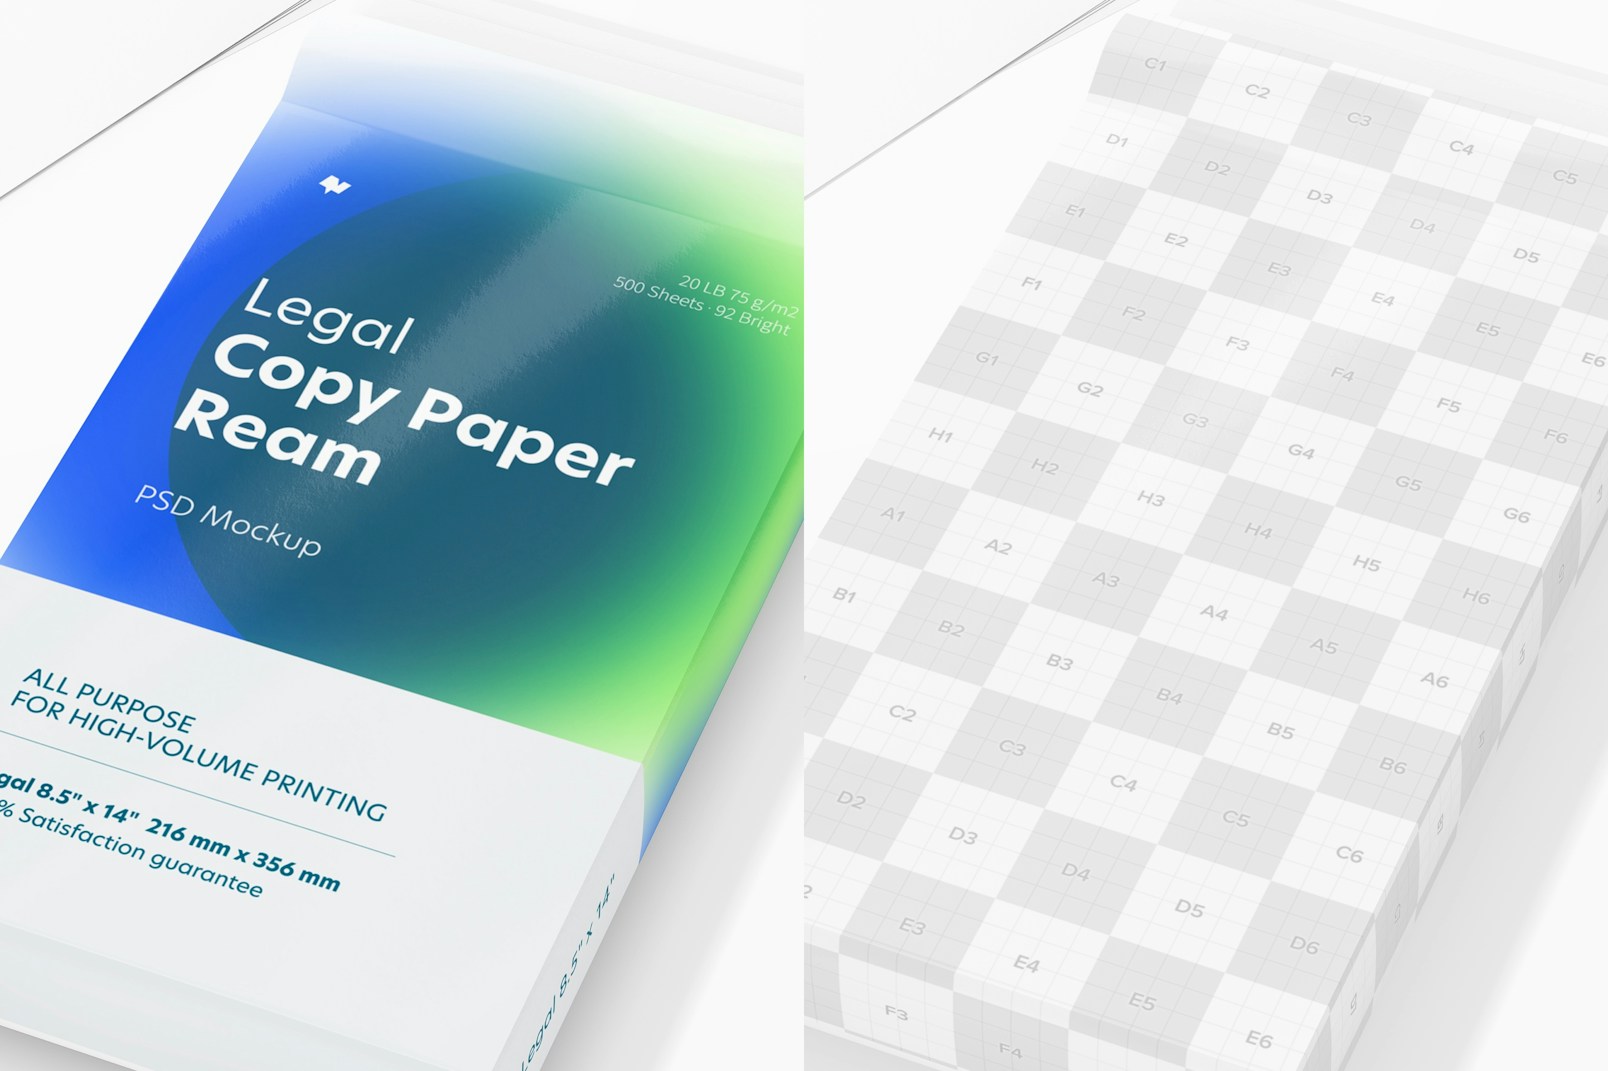 Legal Copy Paper Ream Mockup, Close Up